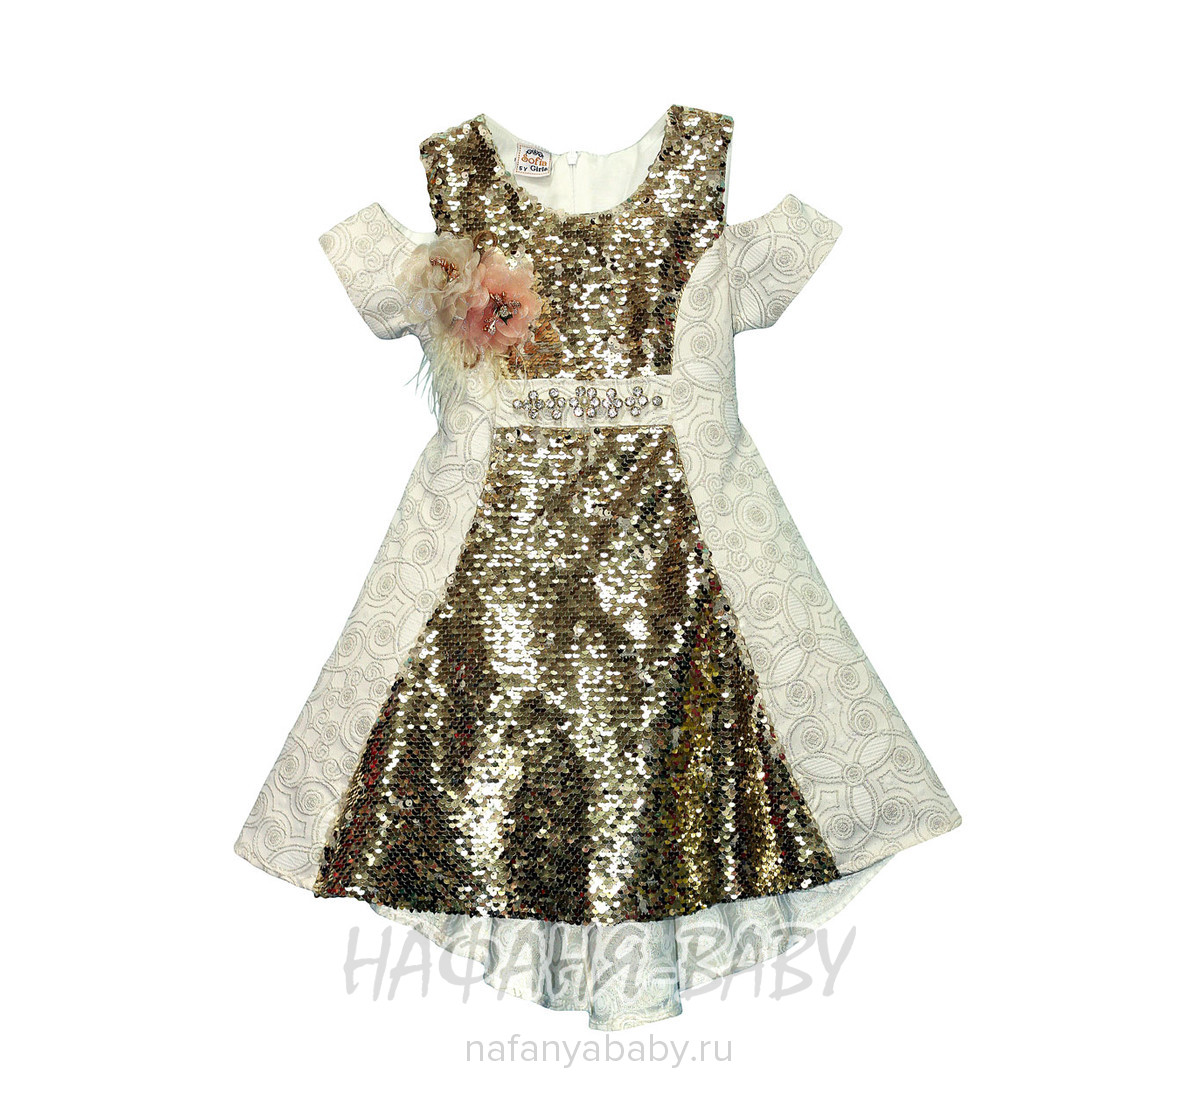 Детское нарядное платье с паетками-перевертышами SOFIA, купить в интернет магазине Нафаня. арт: 2378.